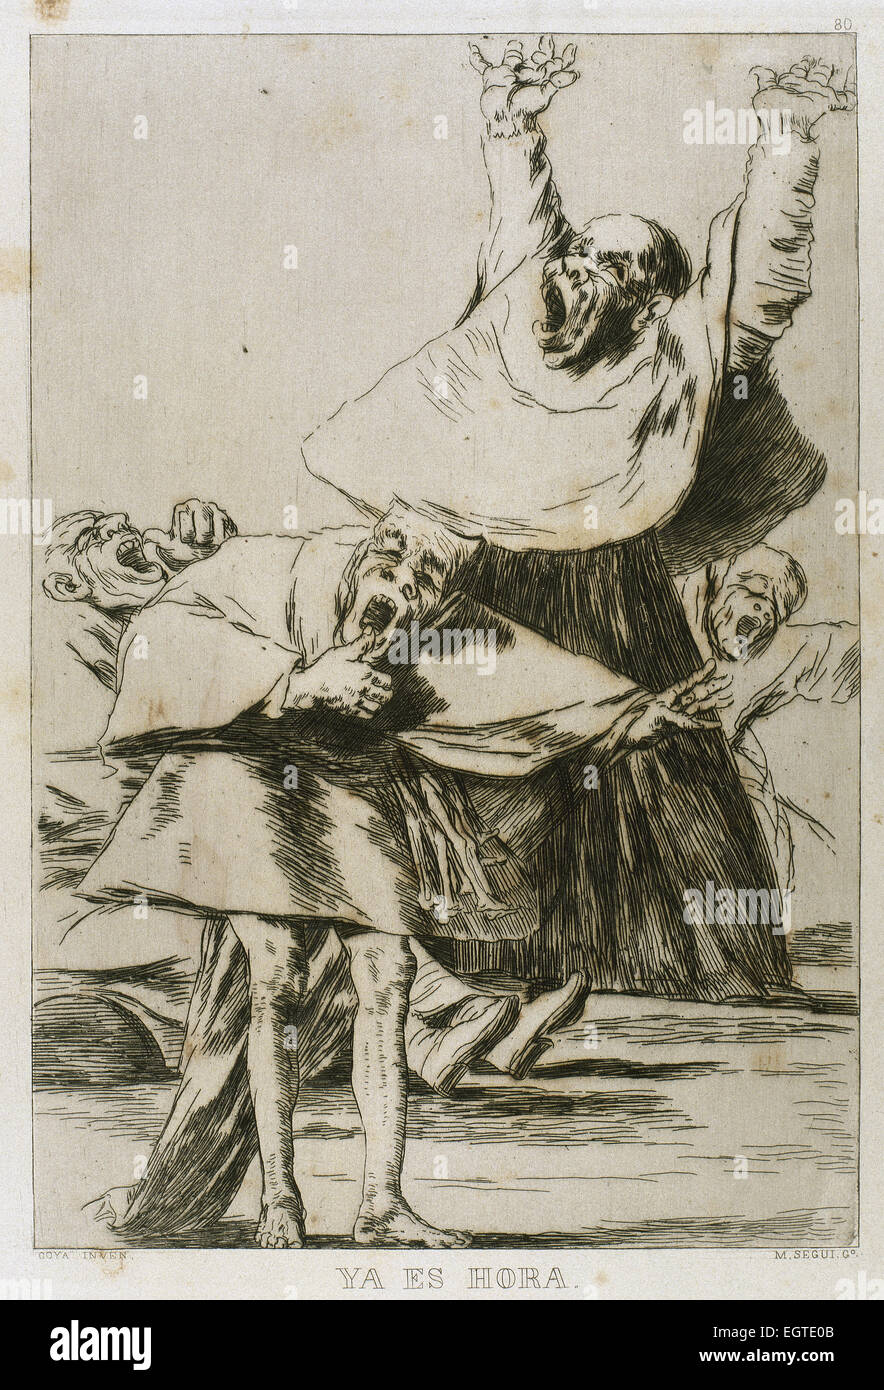 Francisco Goya (1746-1828). De caprices. 80 de la plaque. 18e siècle. Il est temps. Musée du Prado. Madrid. Banque D'Images